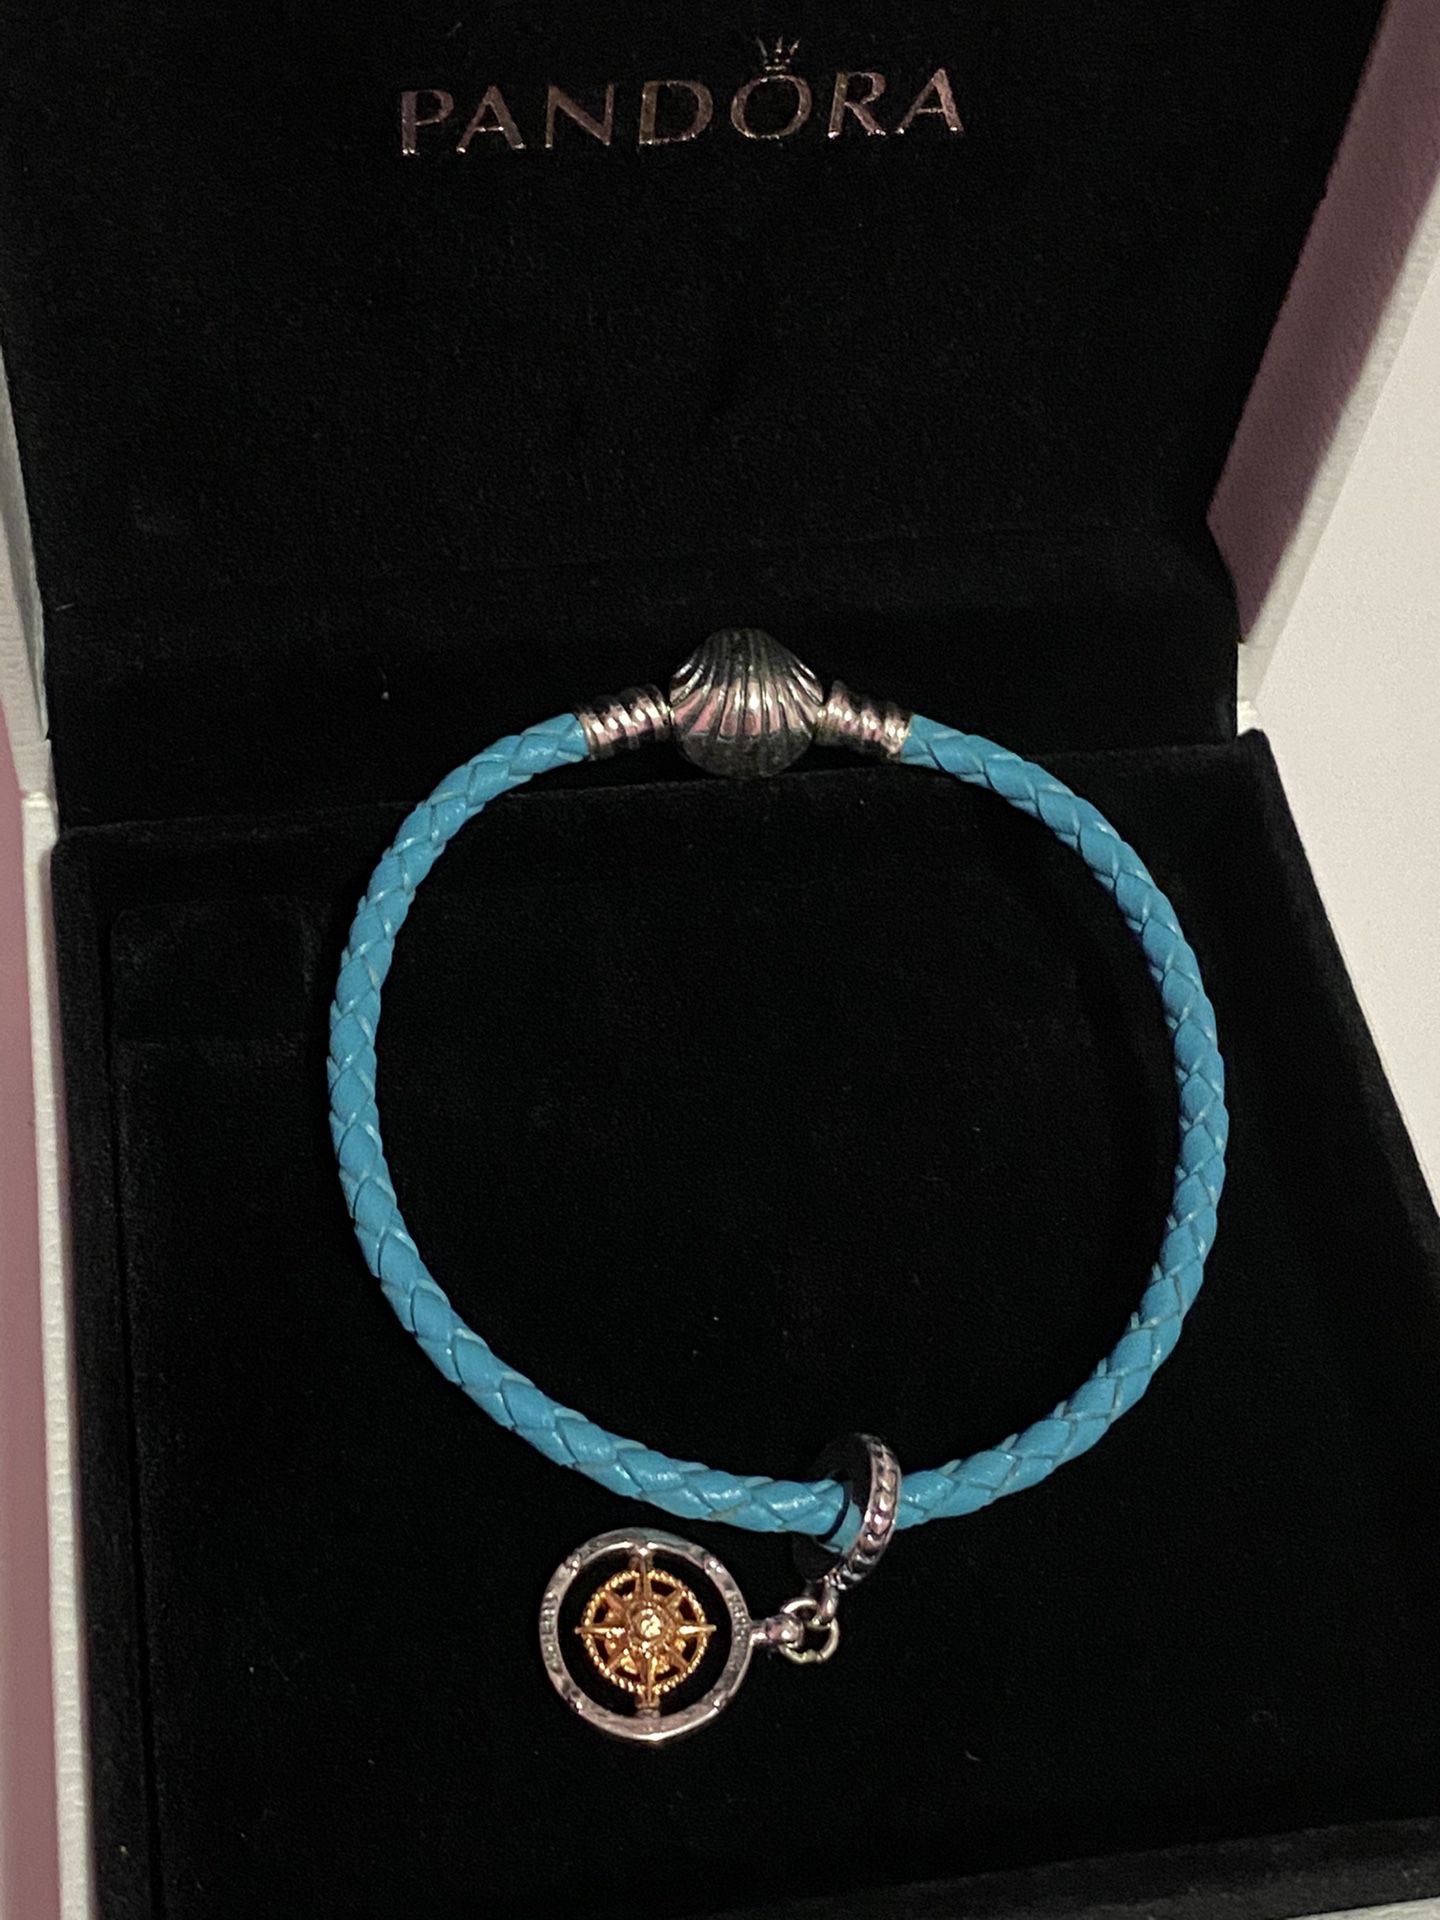 Pandora Sea charm and bracelet